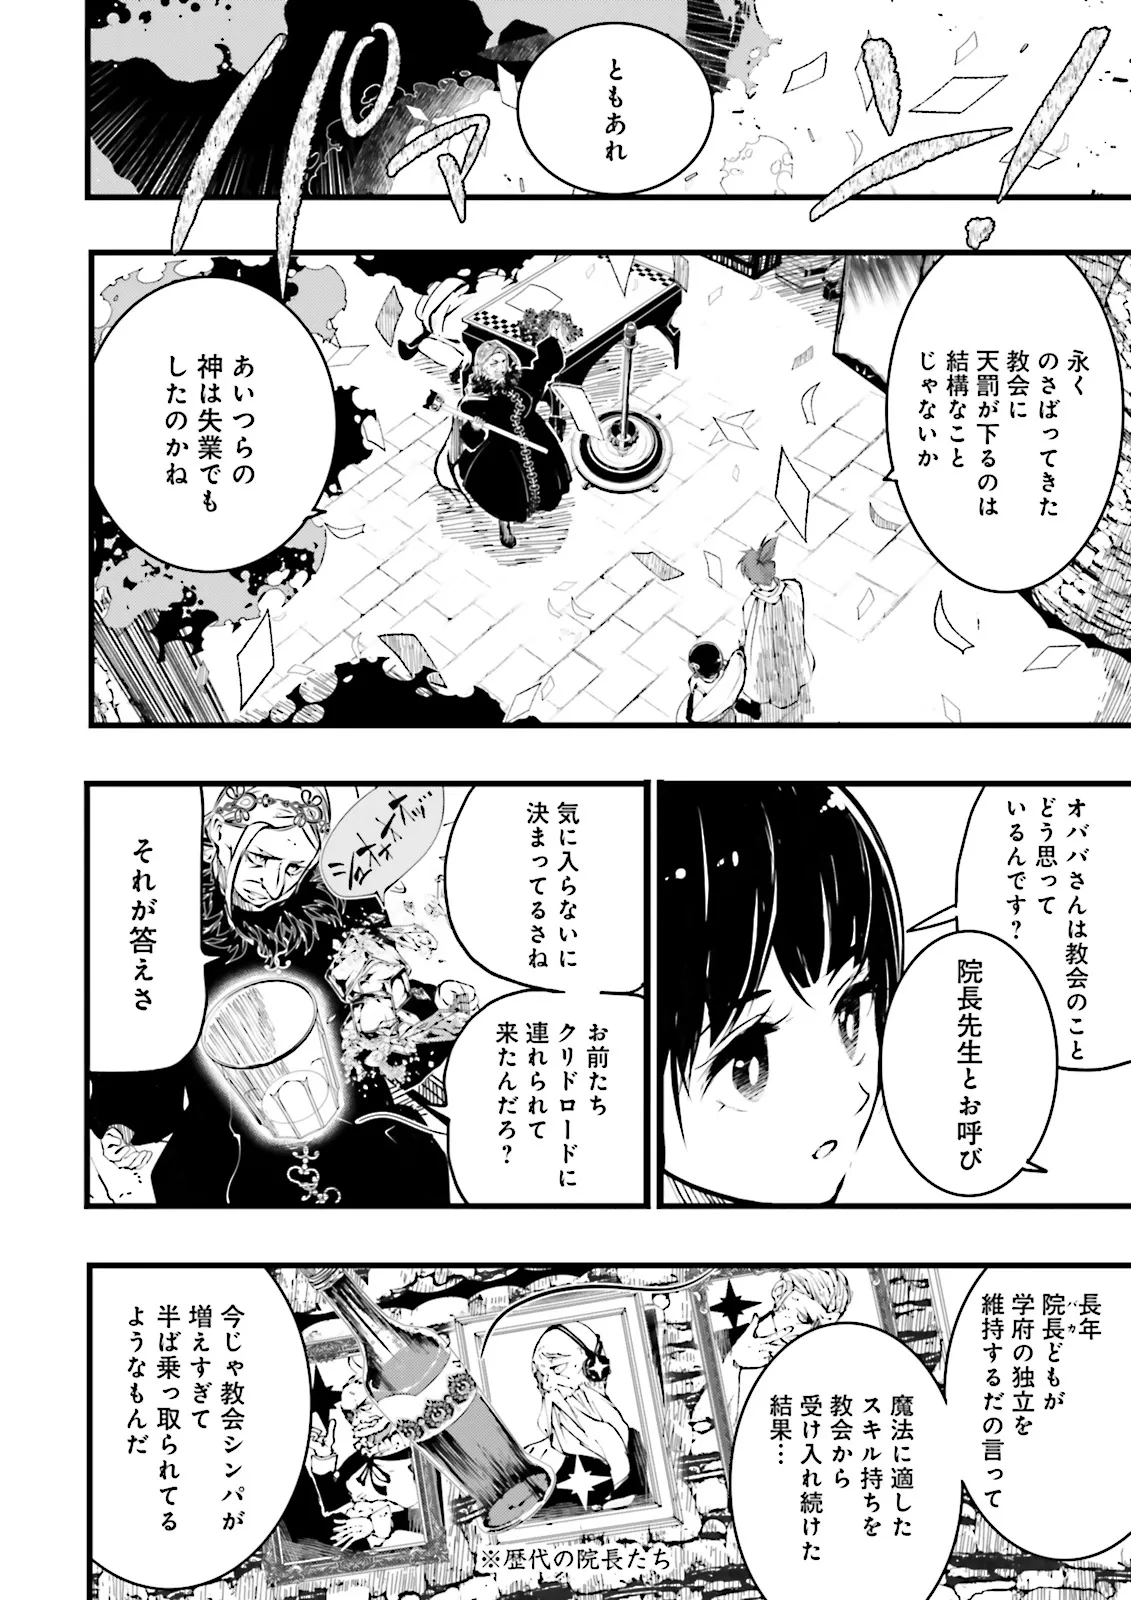 Sukiru Ga Nakereba Level wo Ageru ~ 99 Ga Kansuto No Sekai De Reberu 800 Man Kara Sutato ~ - Chapter 38.1 - Page 2